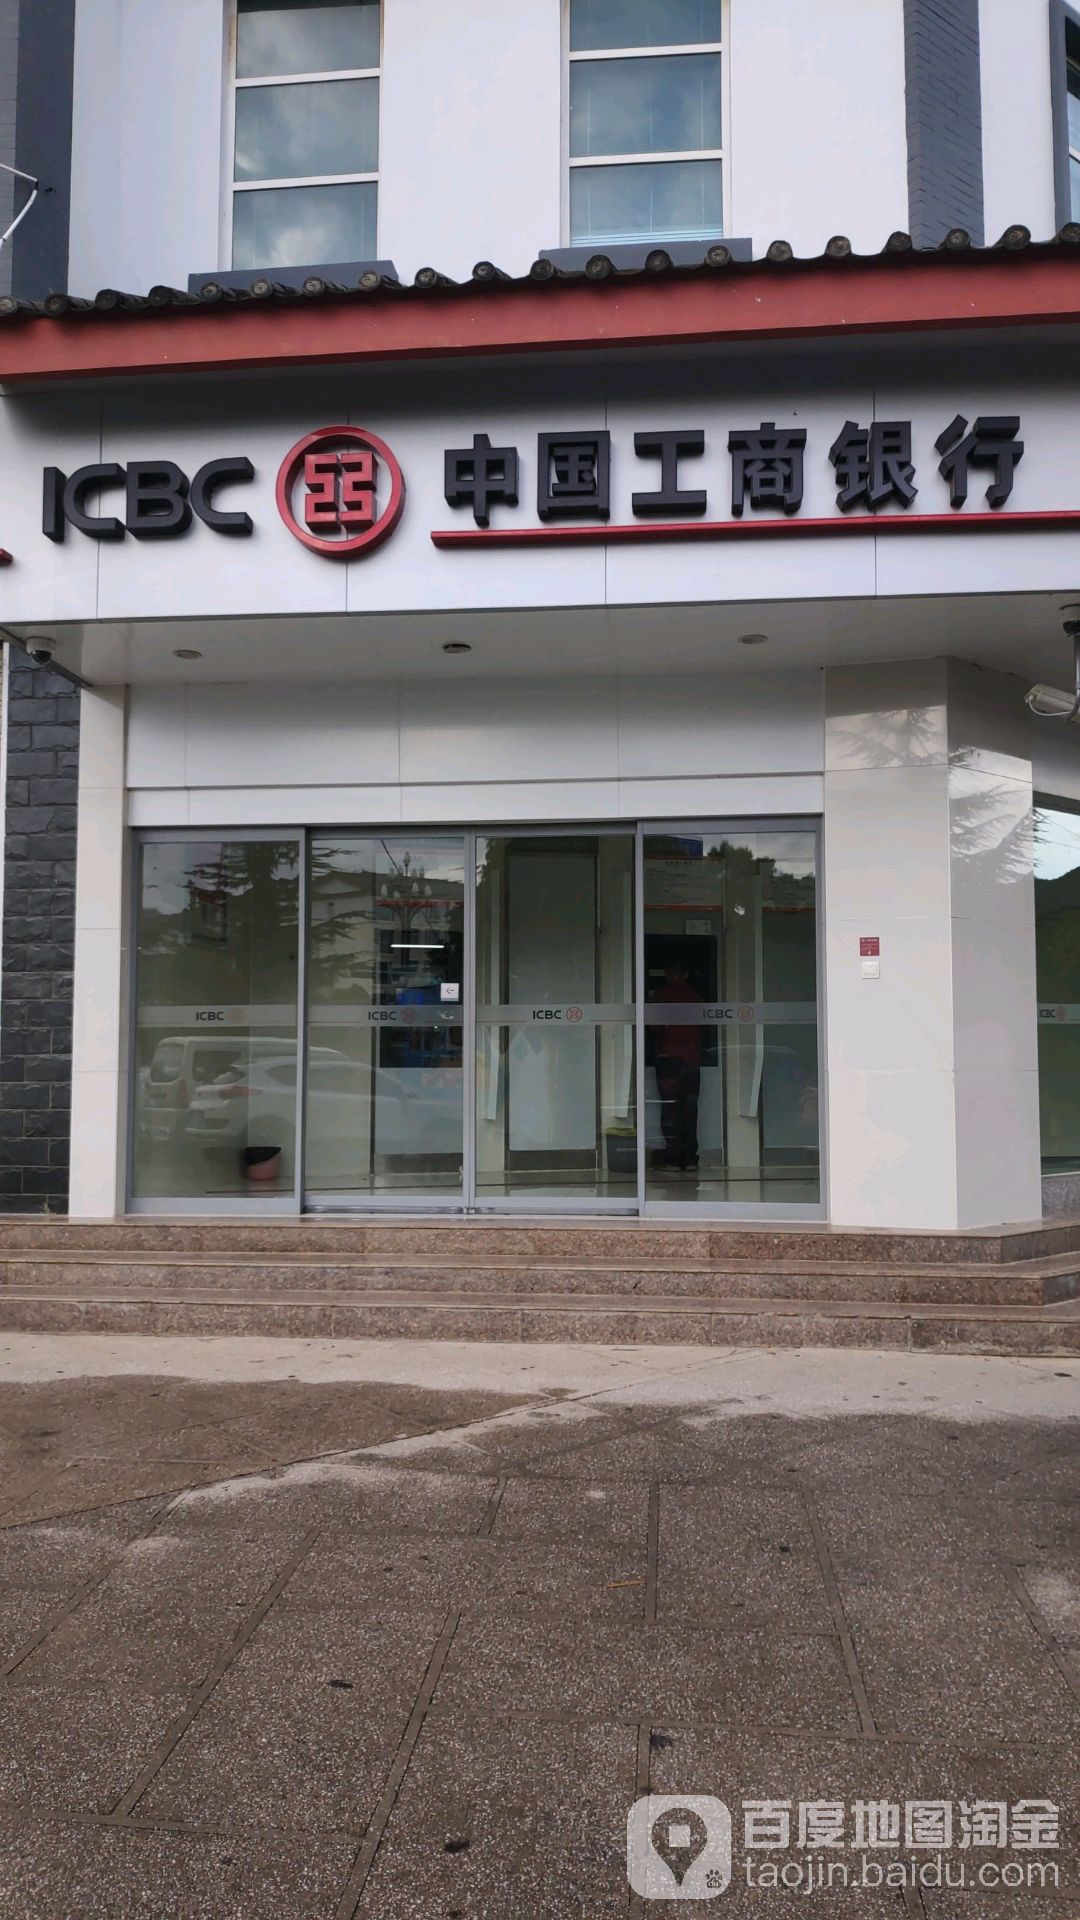 中國工商銀行ATM